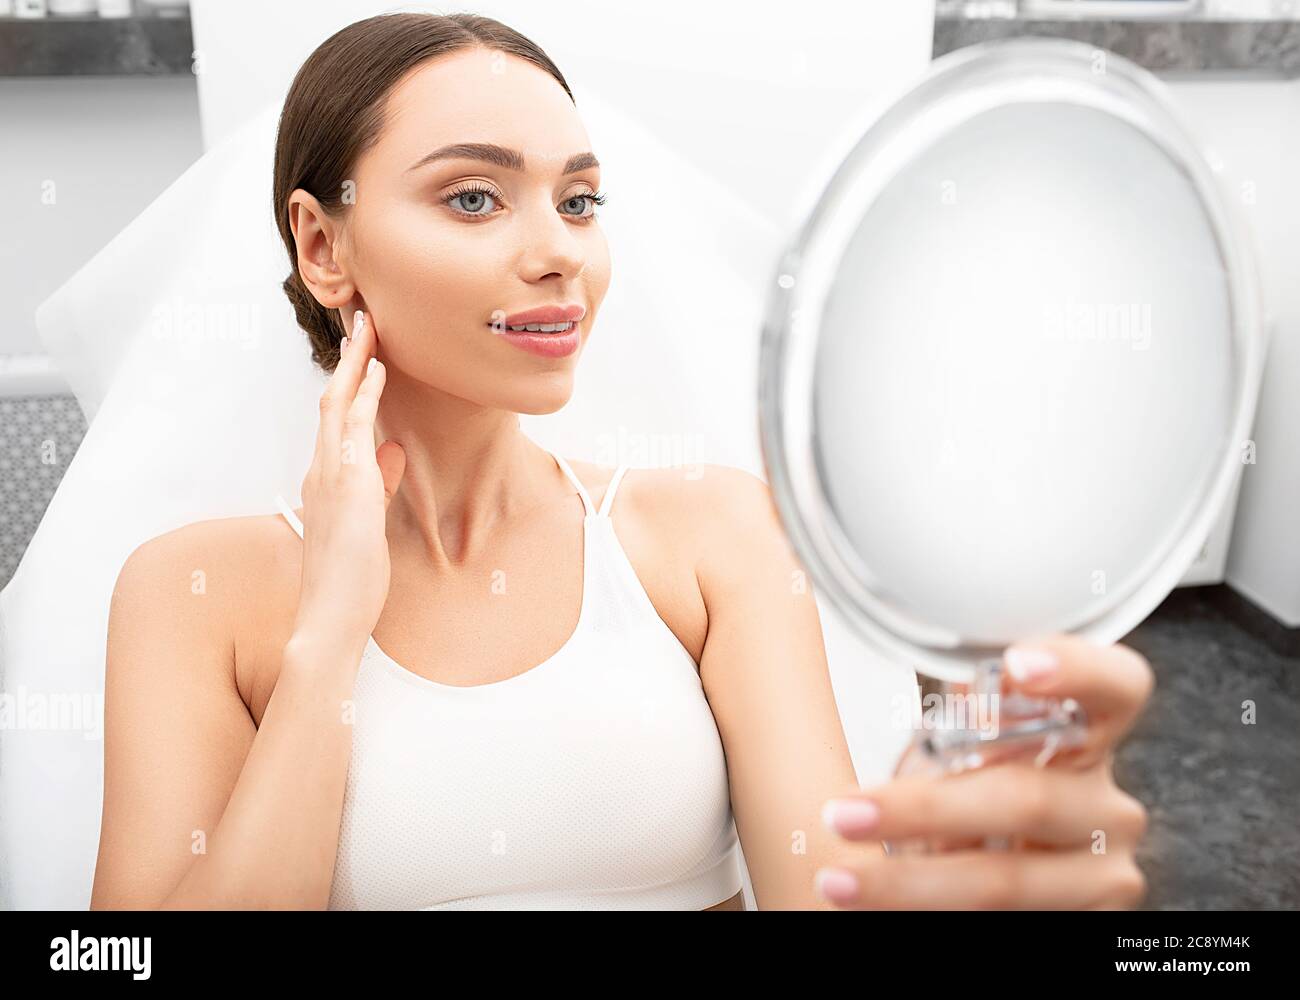 Eine schöne Frau mit einer frischen Gesichtshaut sieht im Spiegel, während sie im Büro der Kosmetikerin sitzt. Kosmetik und Hautbehandlung, schöne Gesundheit Stockfoto